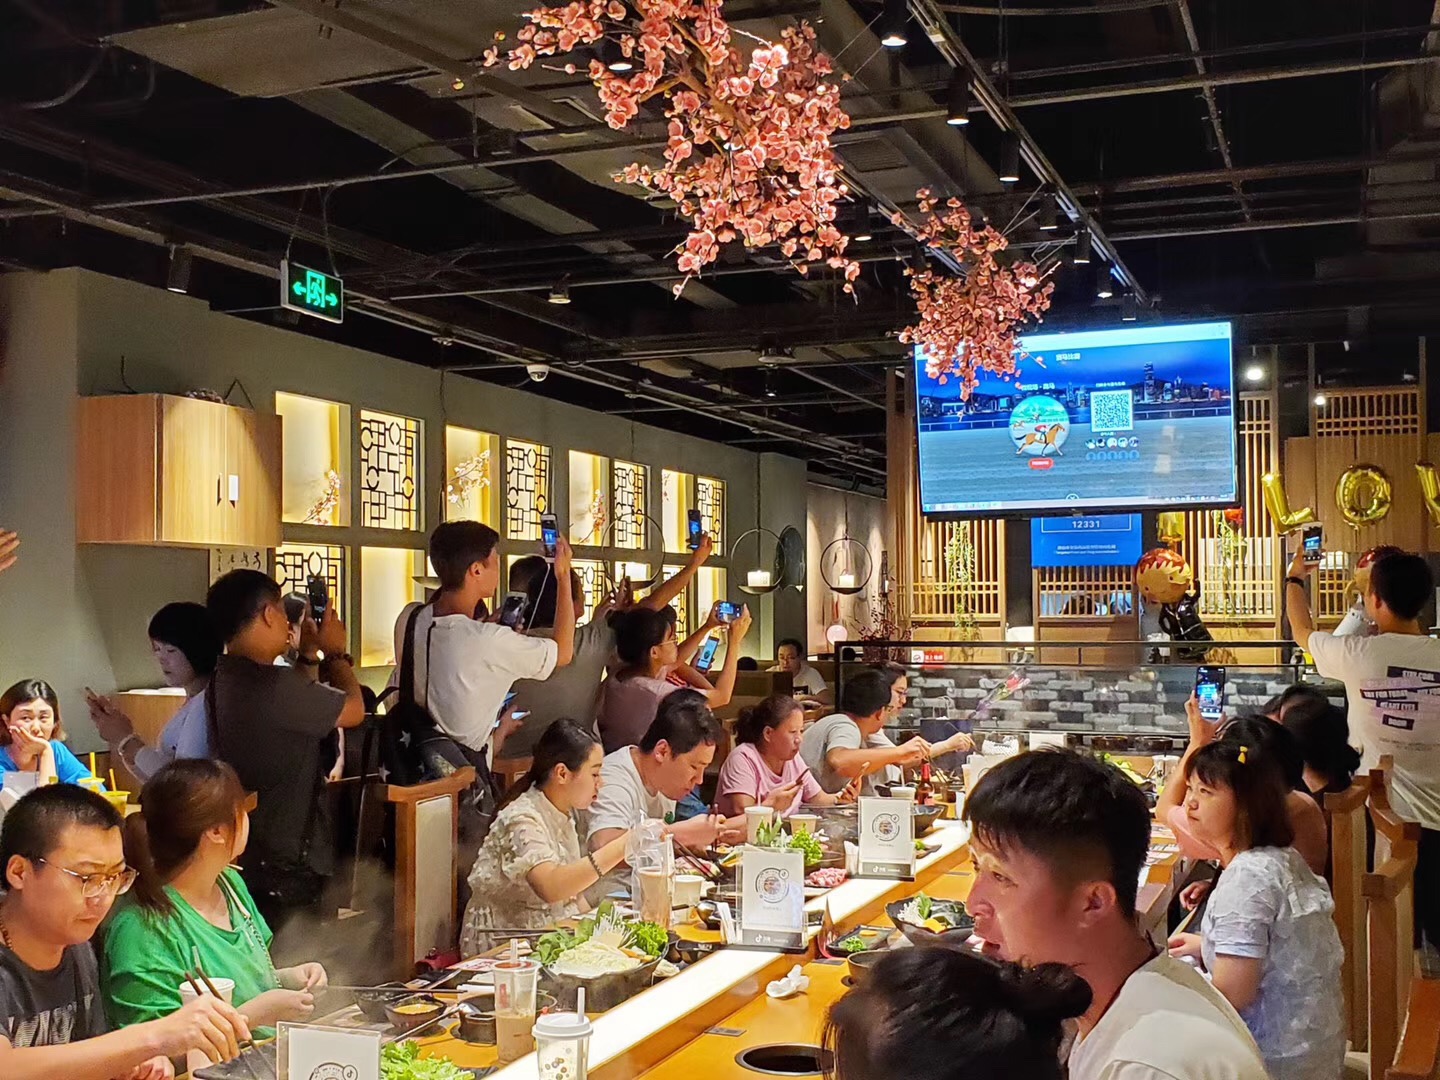 餐饮商家借助微信现场大屏幕互动游戏增加收入